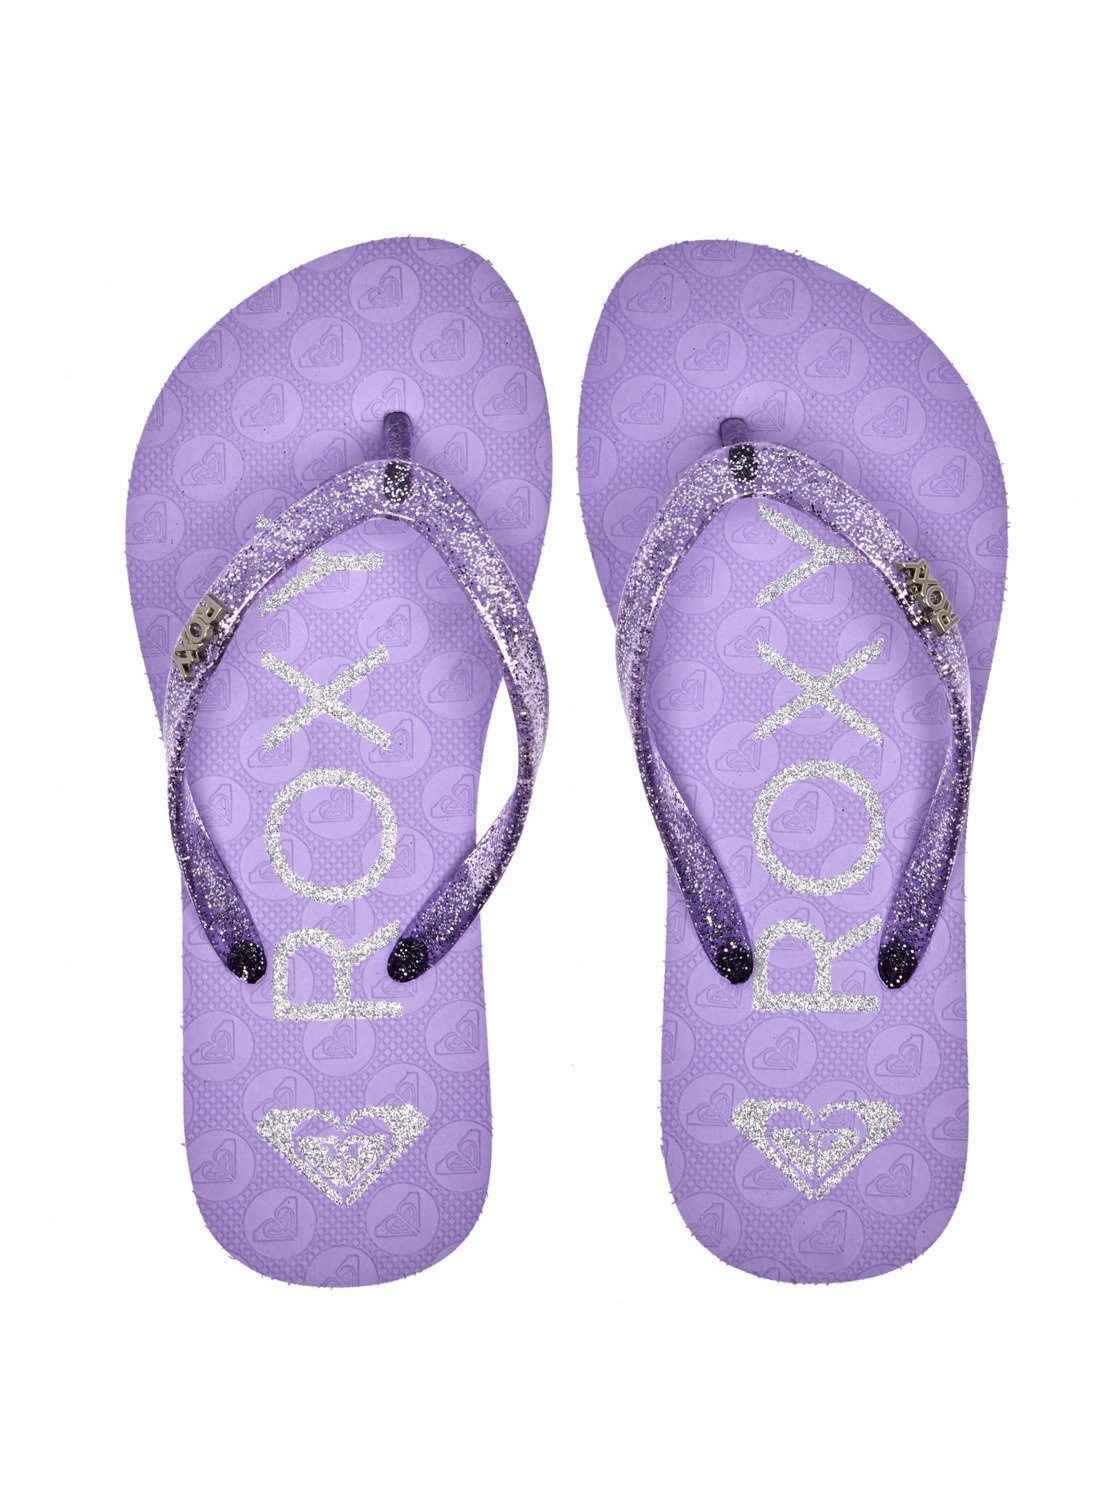 Sandale Viva Sparkle Roxy Purple Heather